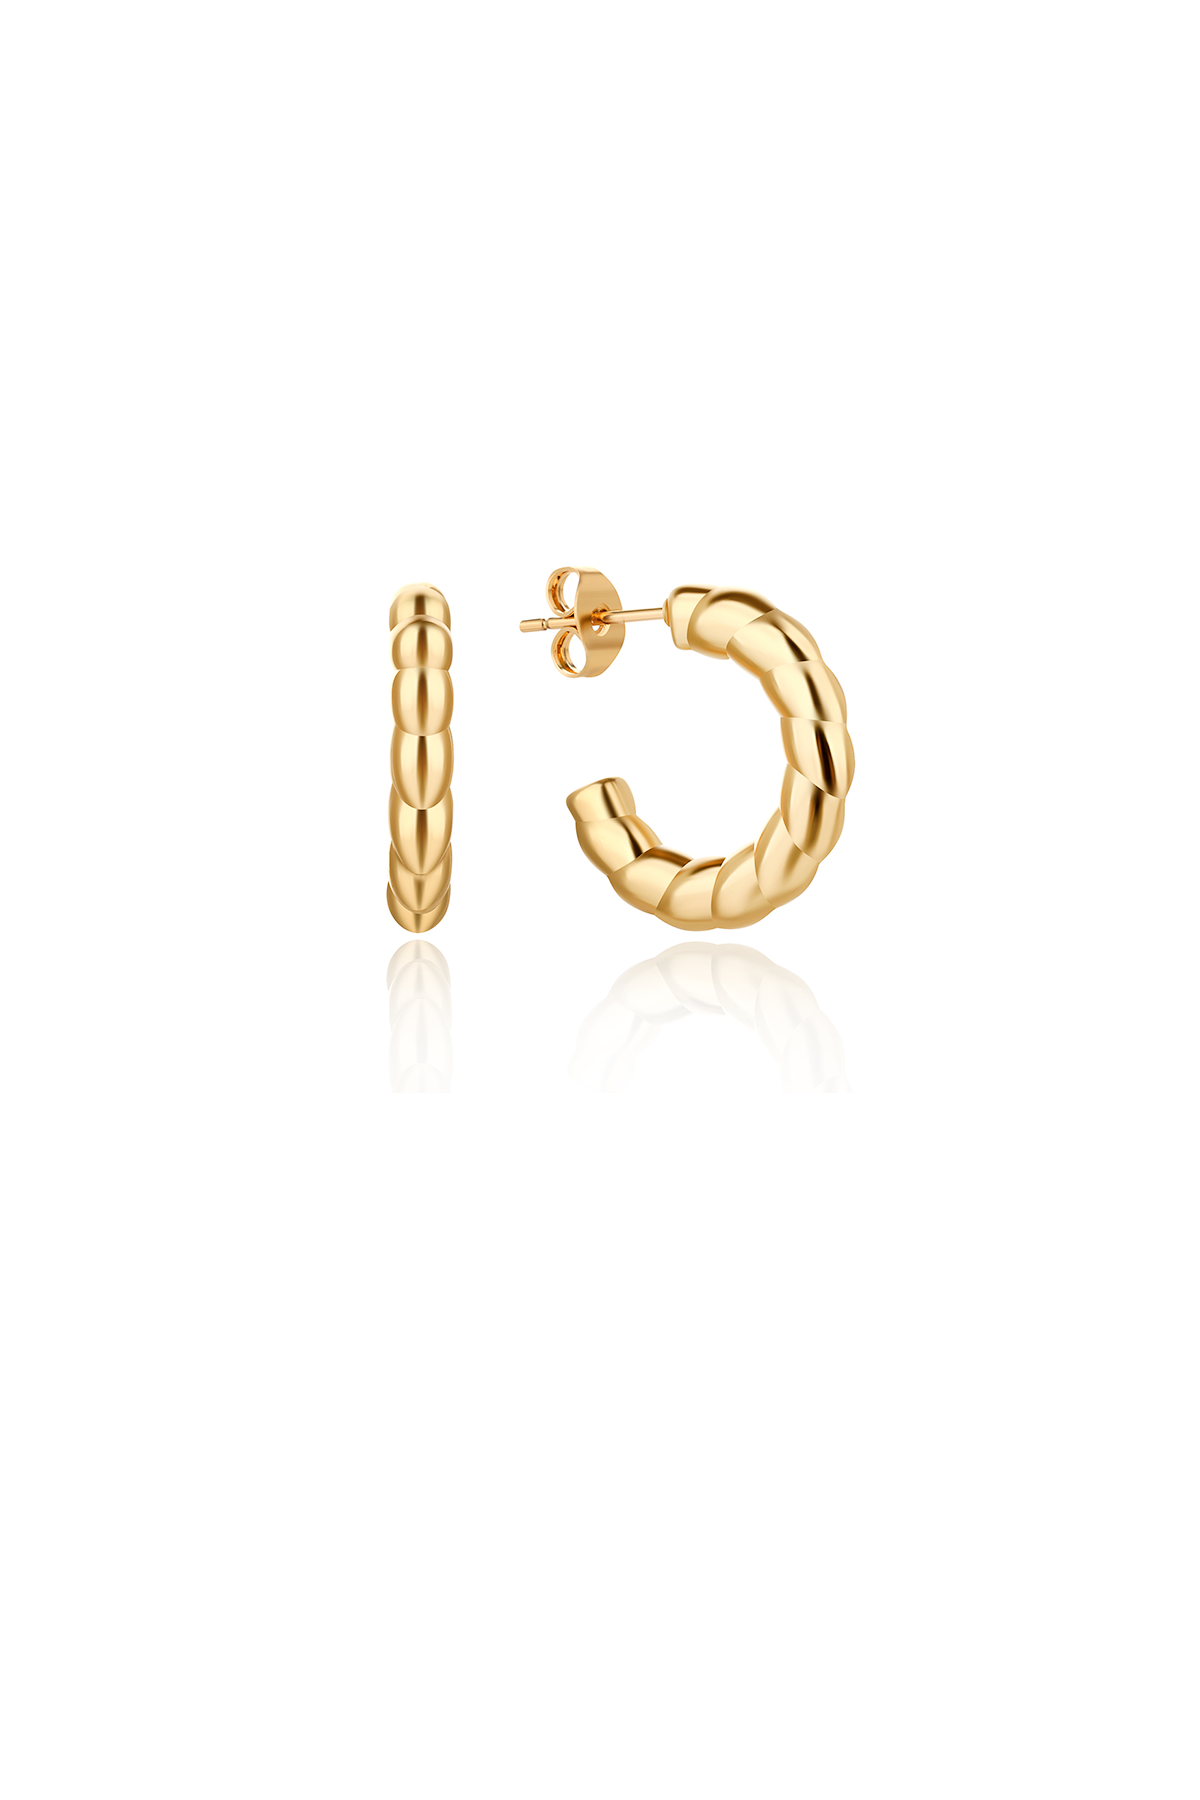 Braided hoop earrings, Gold - 20 mm